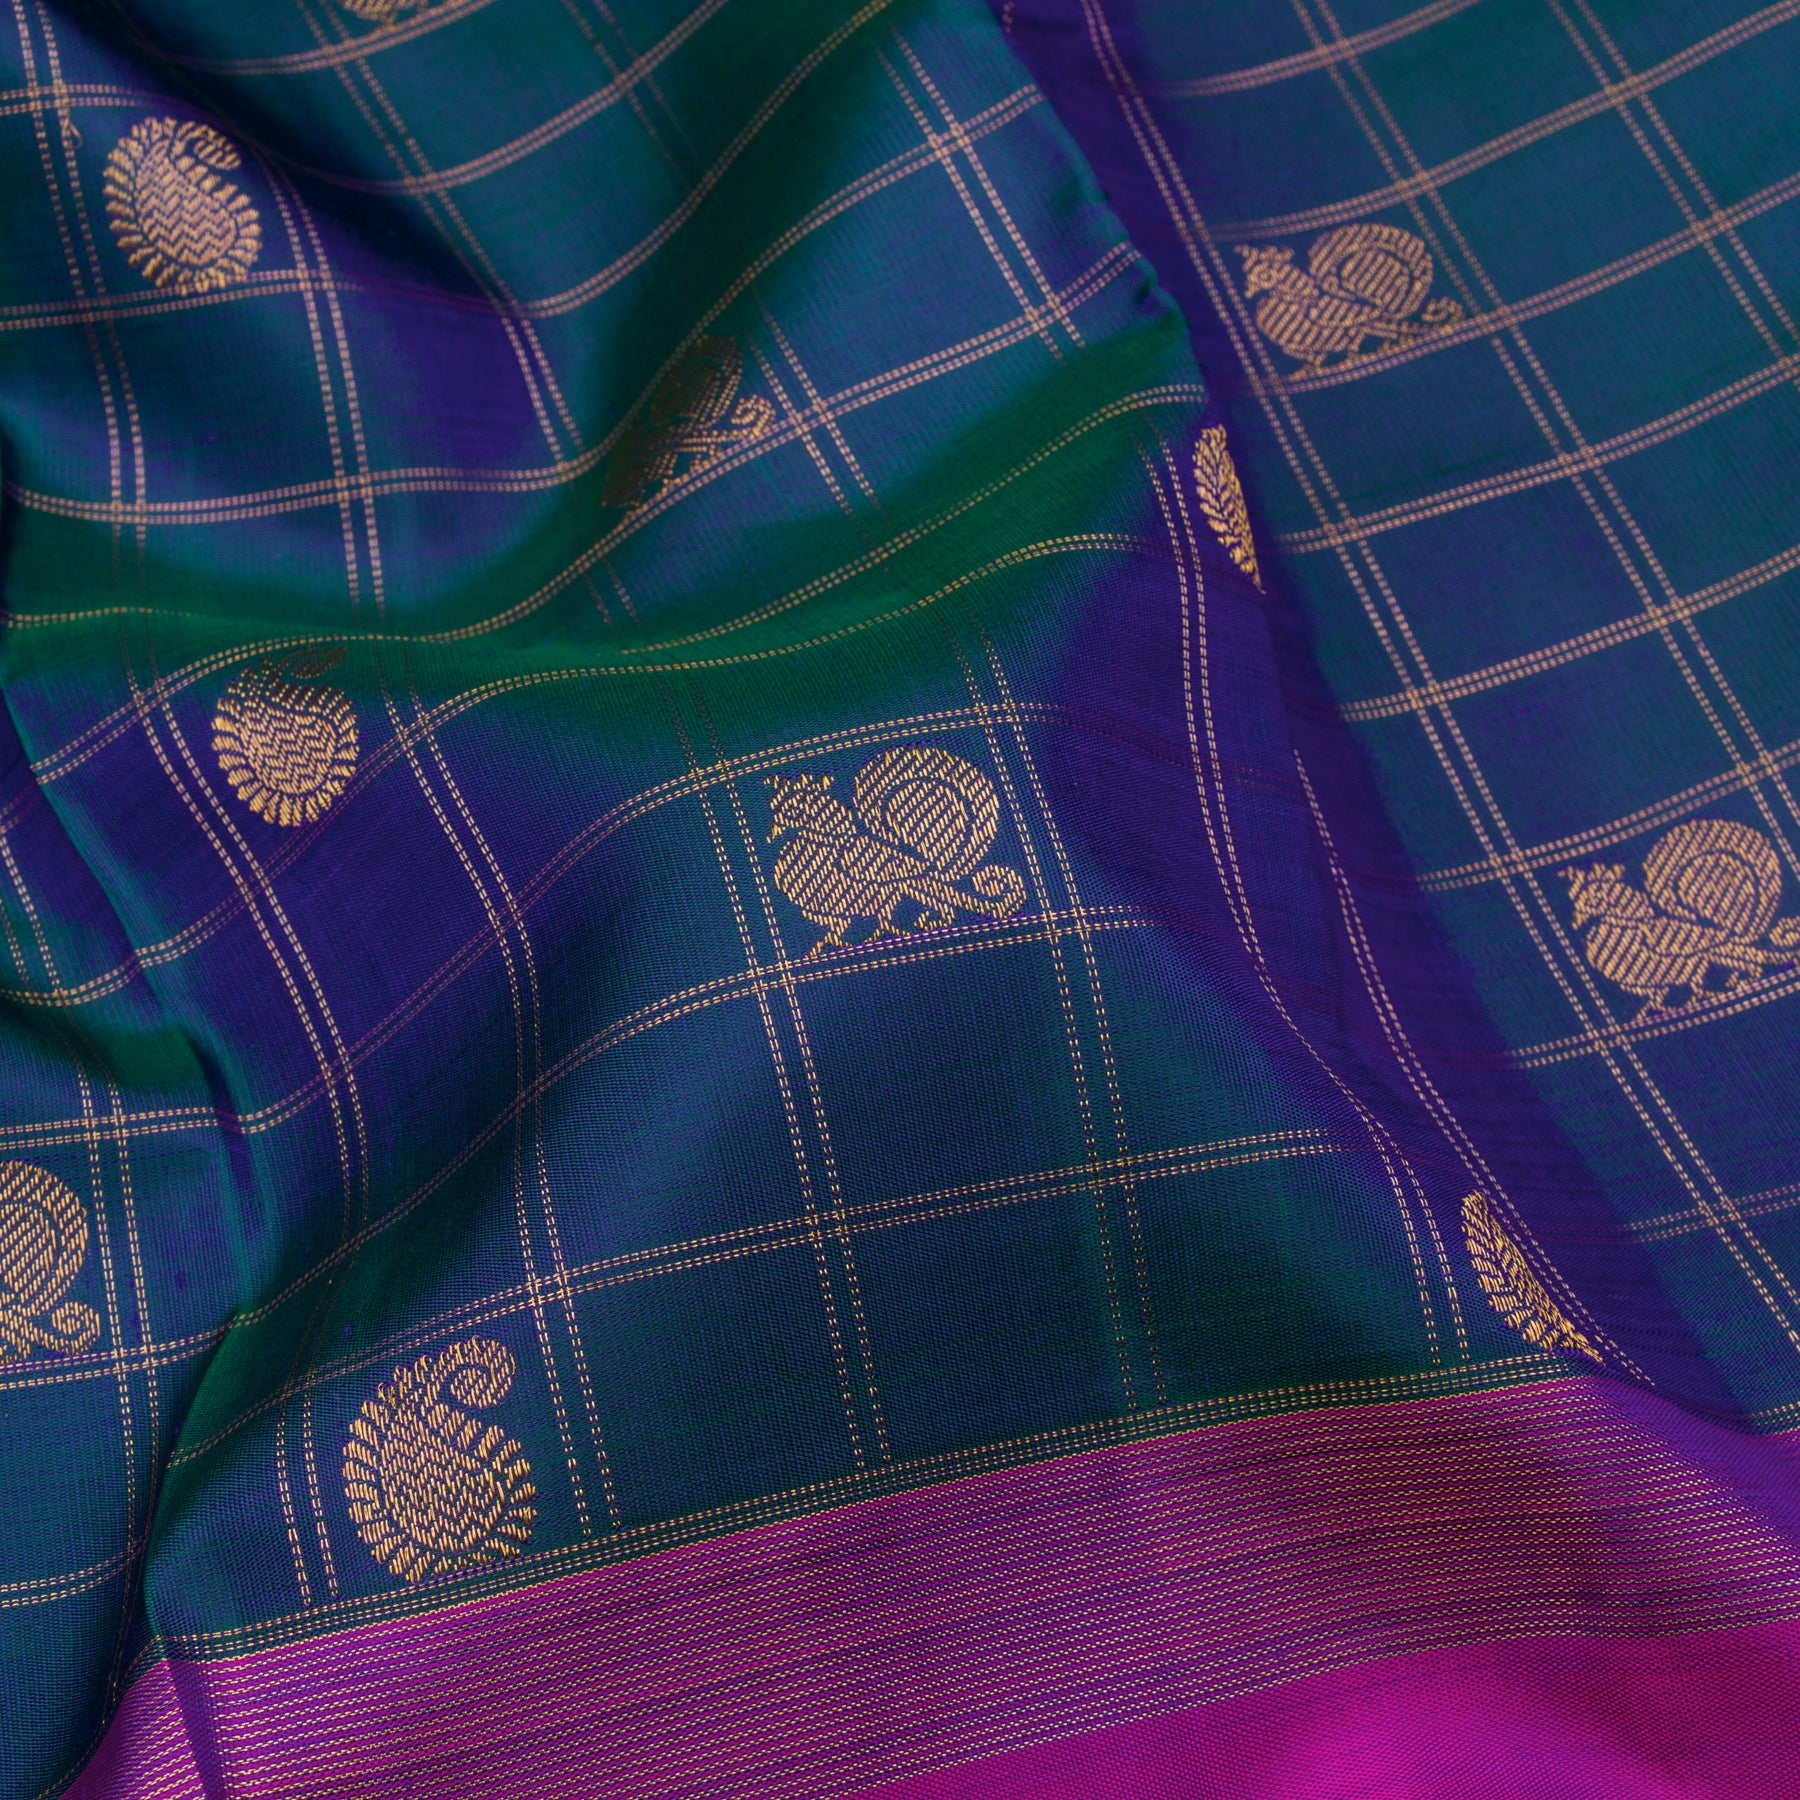 Kanakavalli Kanjivaram Silk Sari 23-599-HS001-12453 - Fabric View